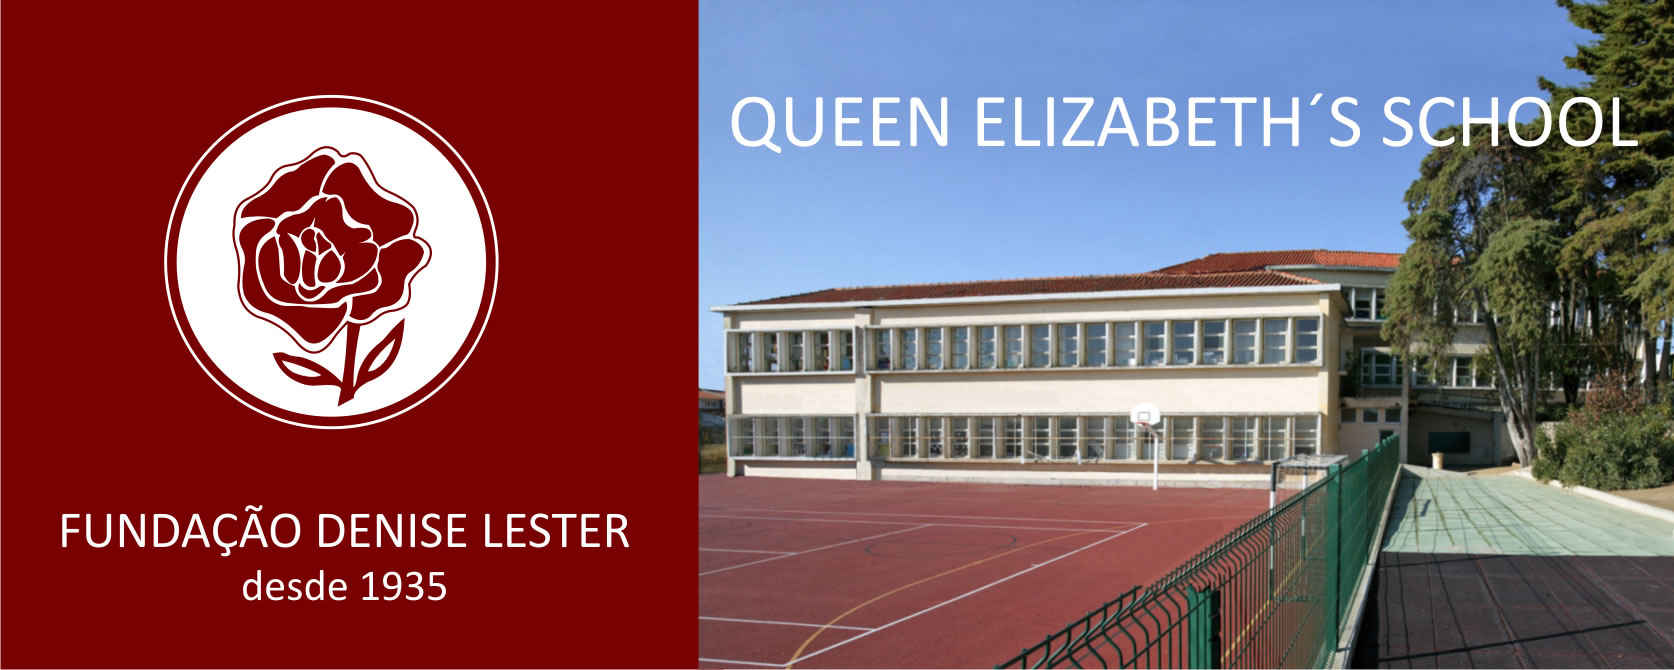 Queen Elizabeth’s School